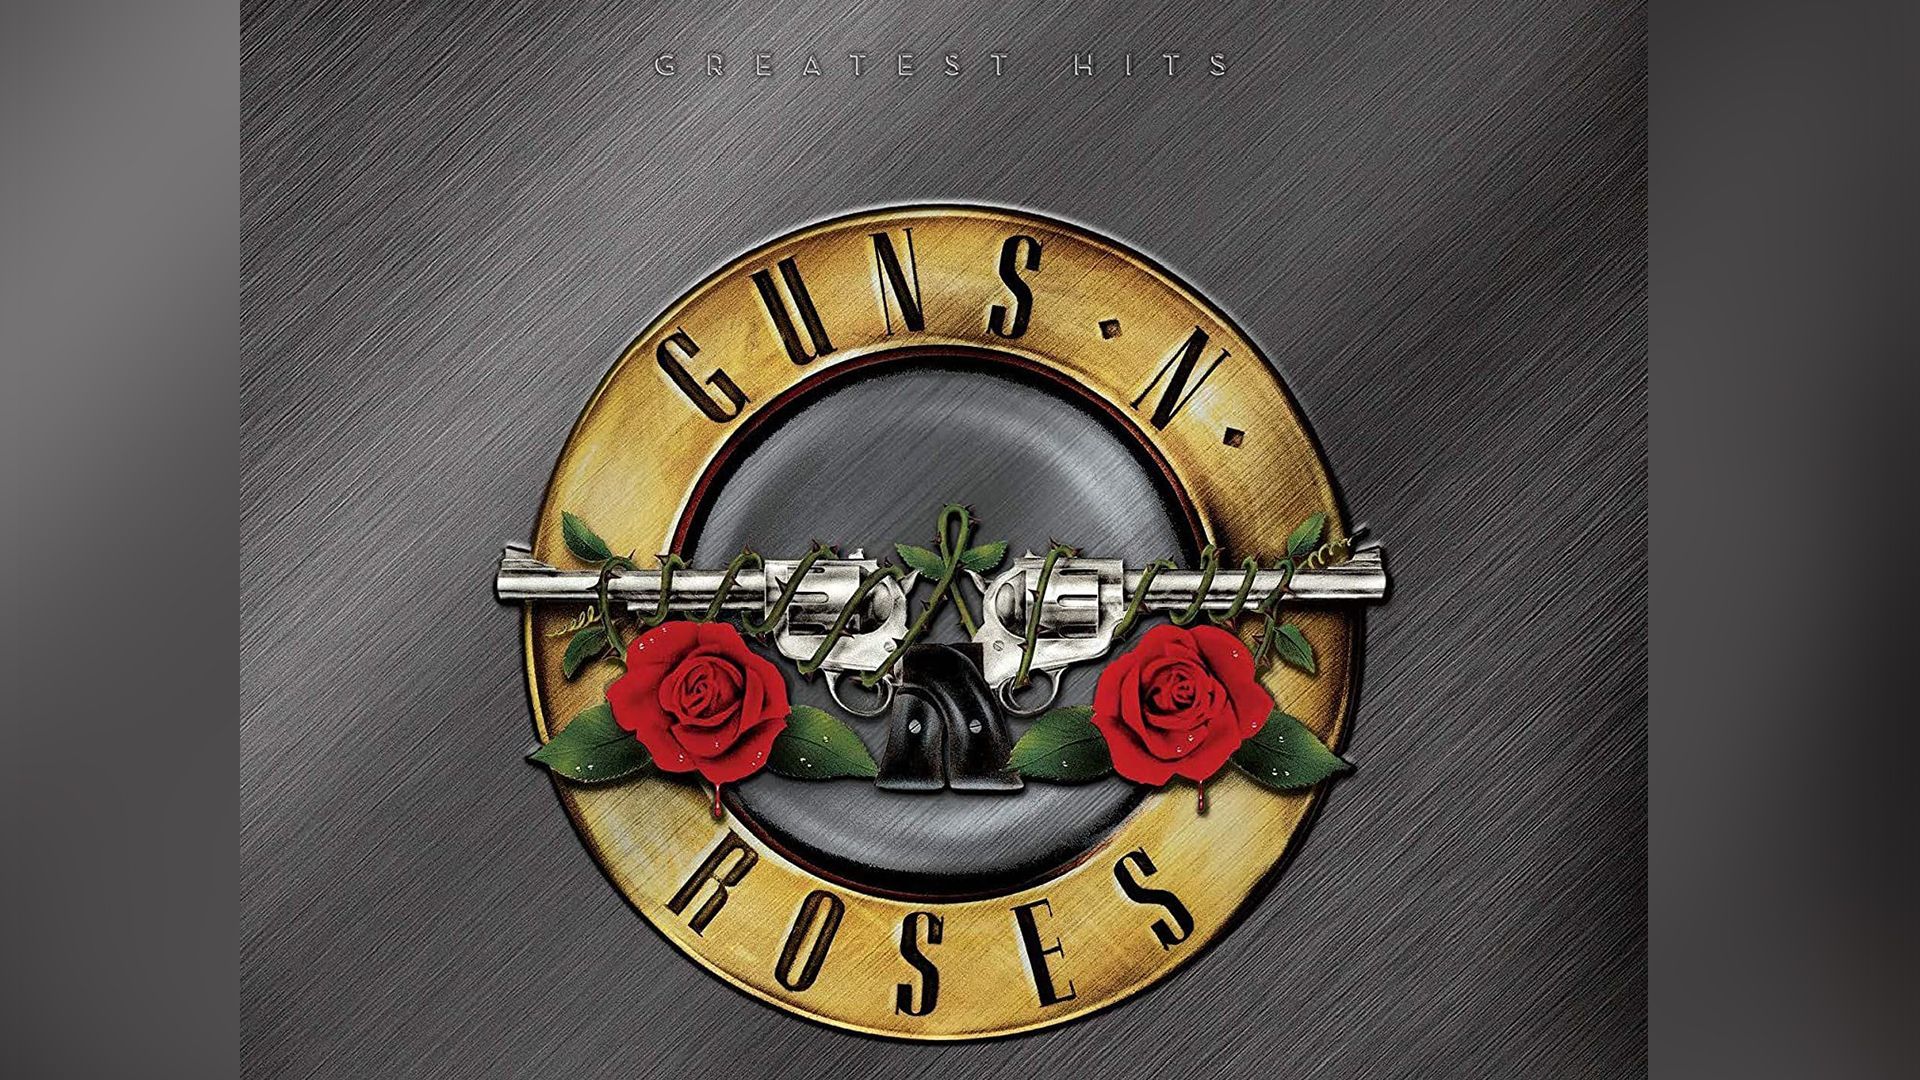 remportez-l-edition-vinyle-du-greatest-hits-de-guns-n-roses